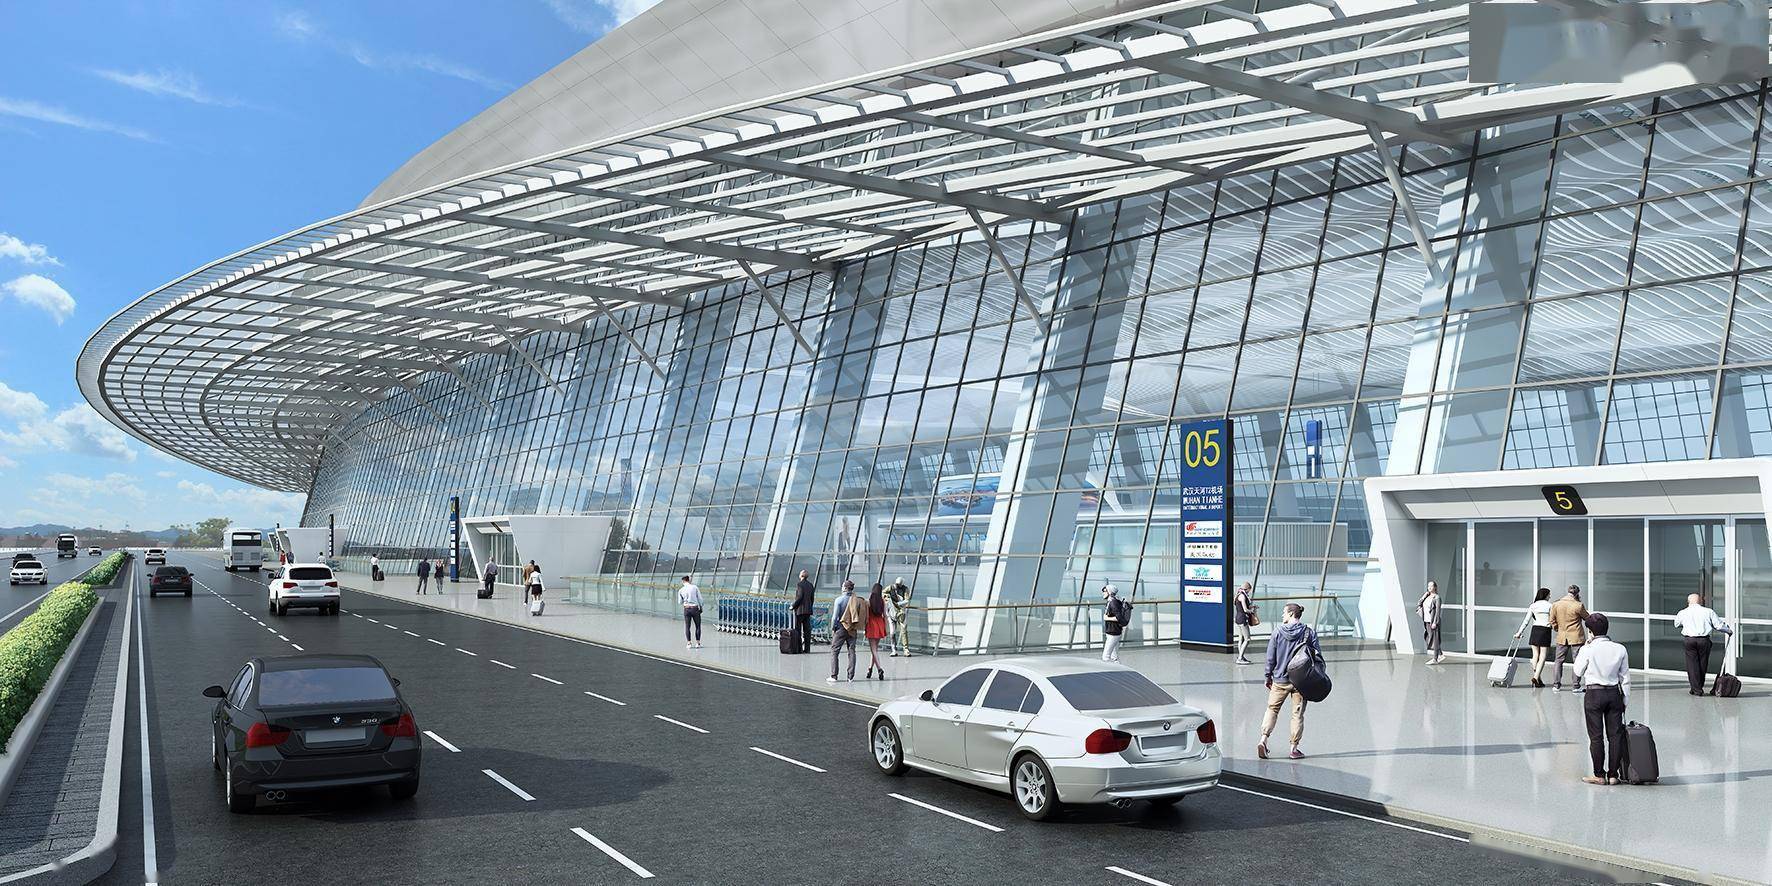 武汉天河机场t2航站楼改造开工 预计后年建成投用_旅客